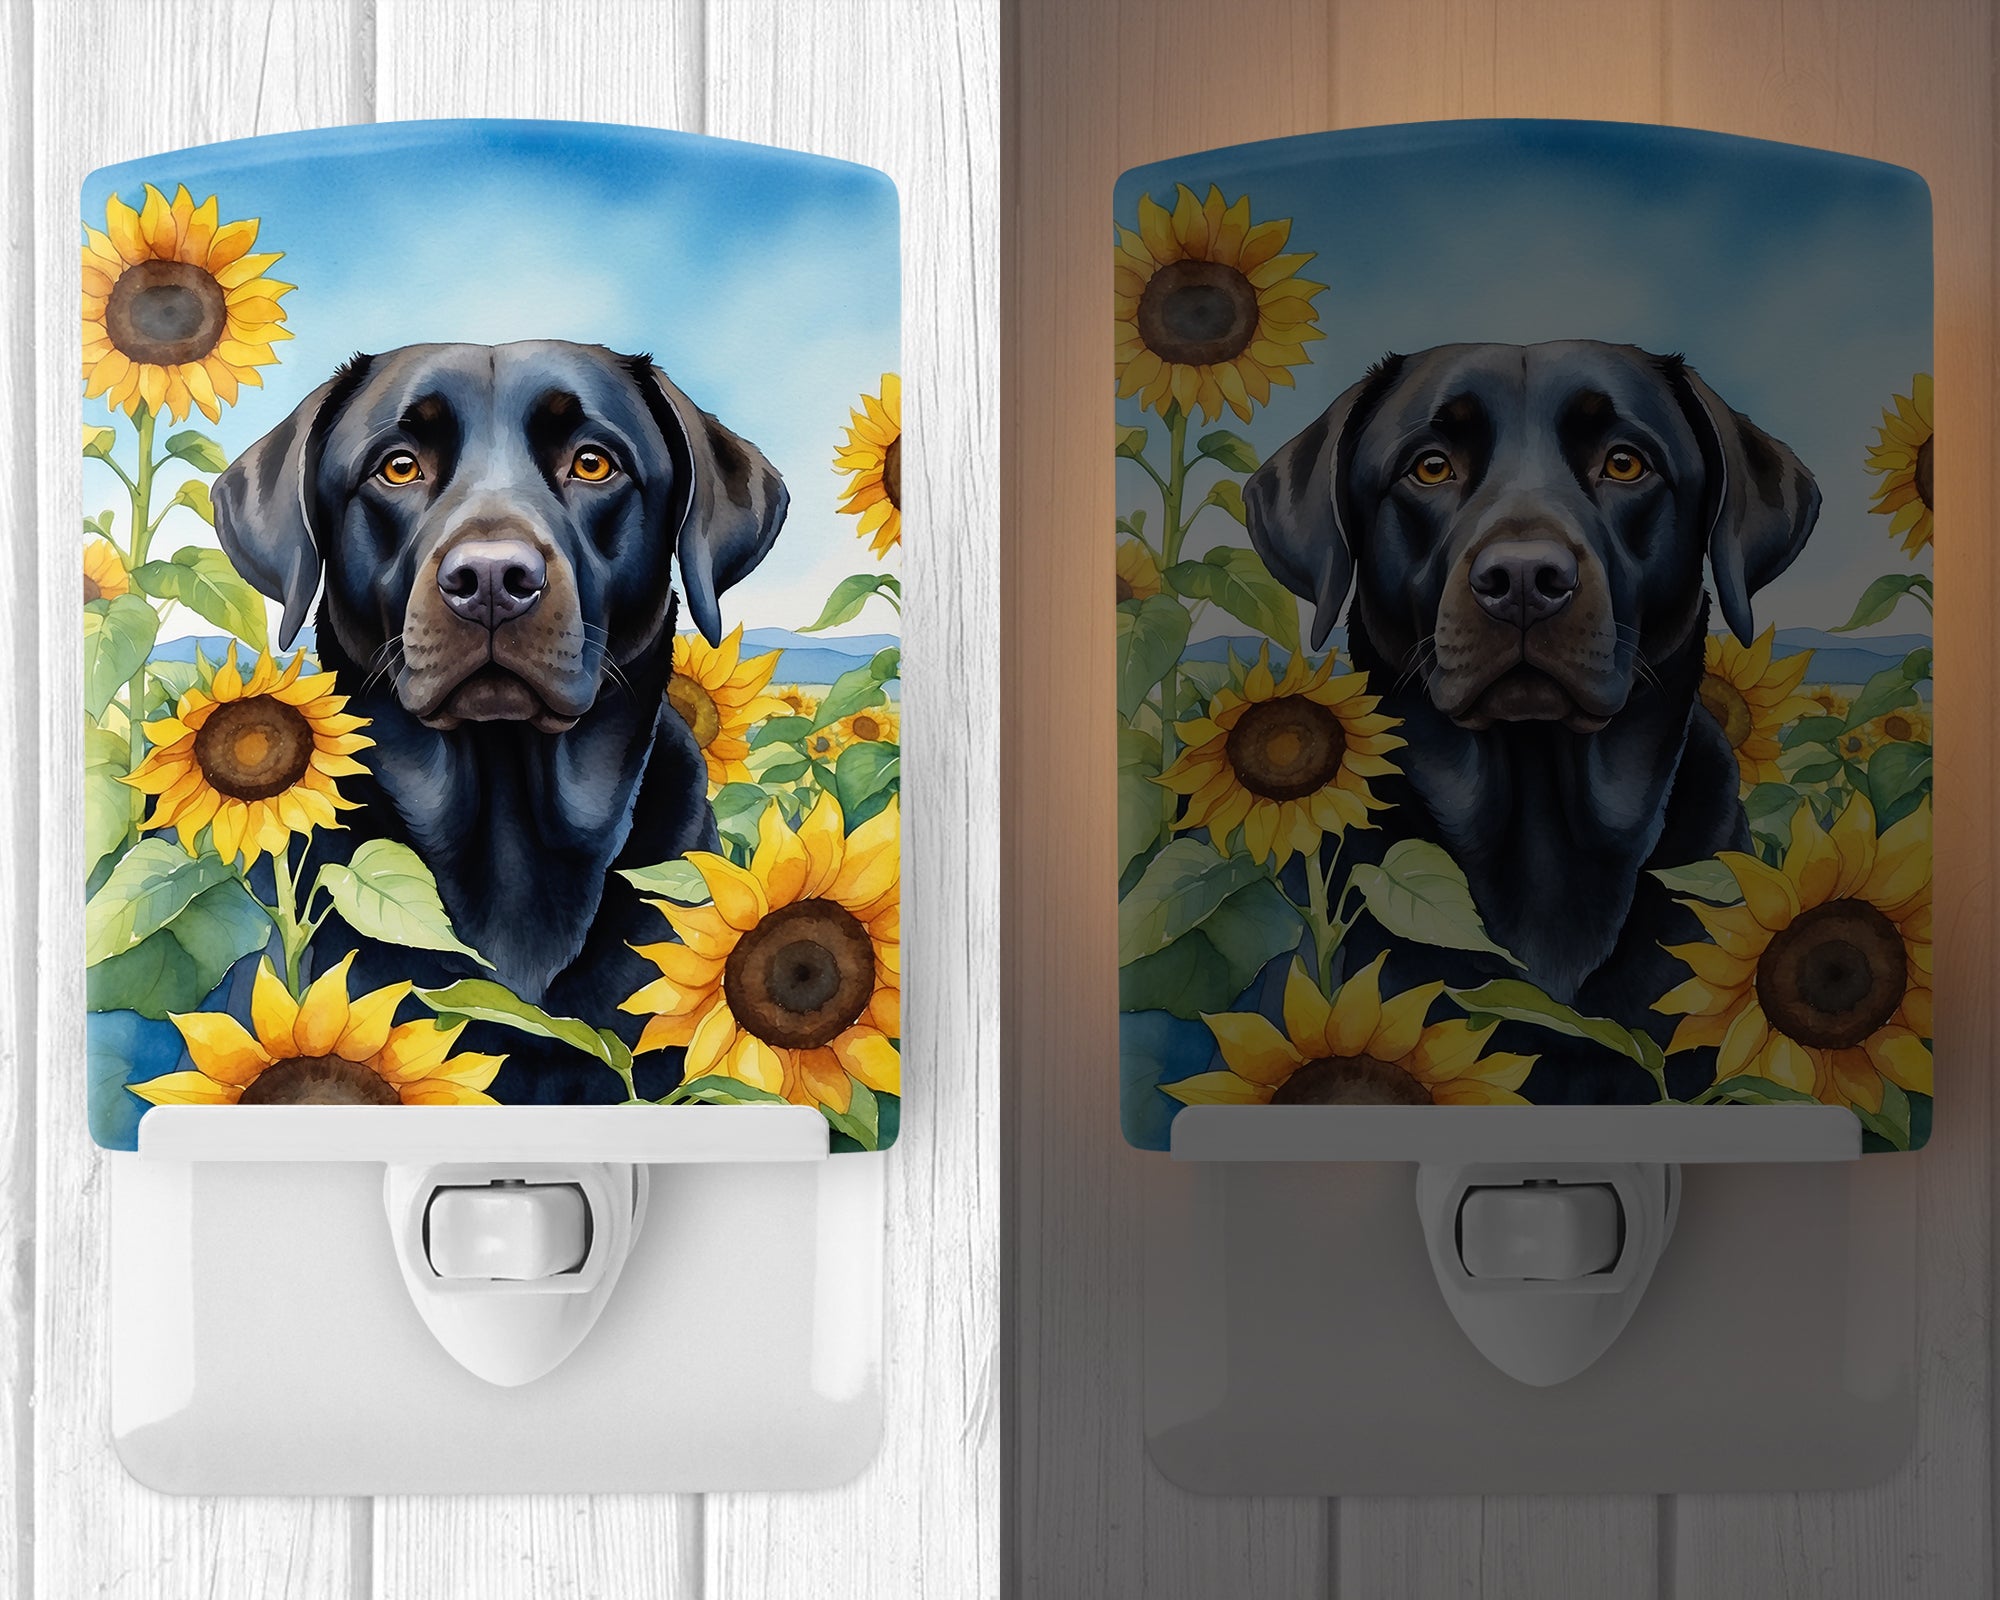 Buy this Labrador Retriever in Sunflowers Ceramic Night Light